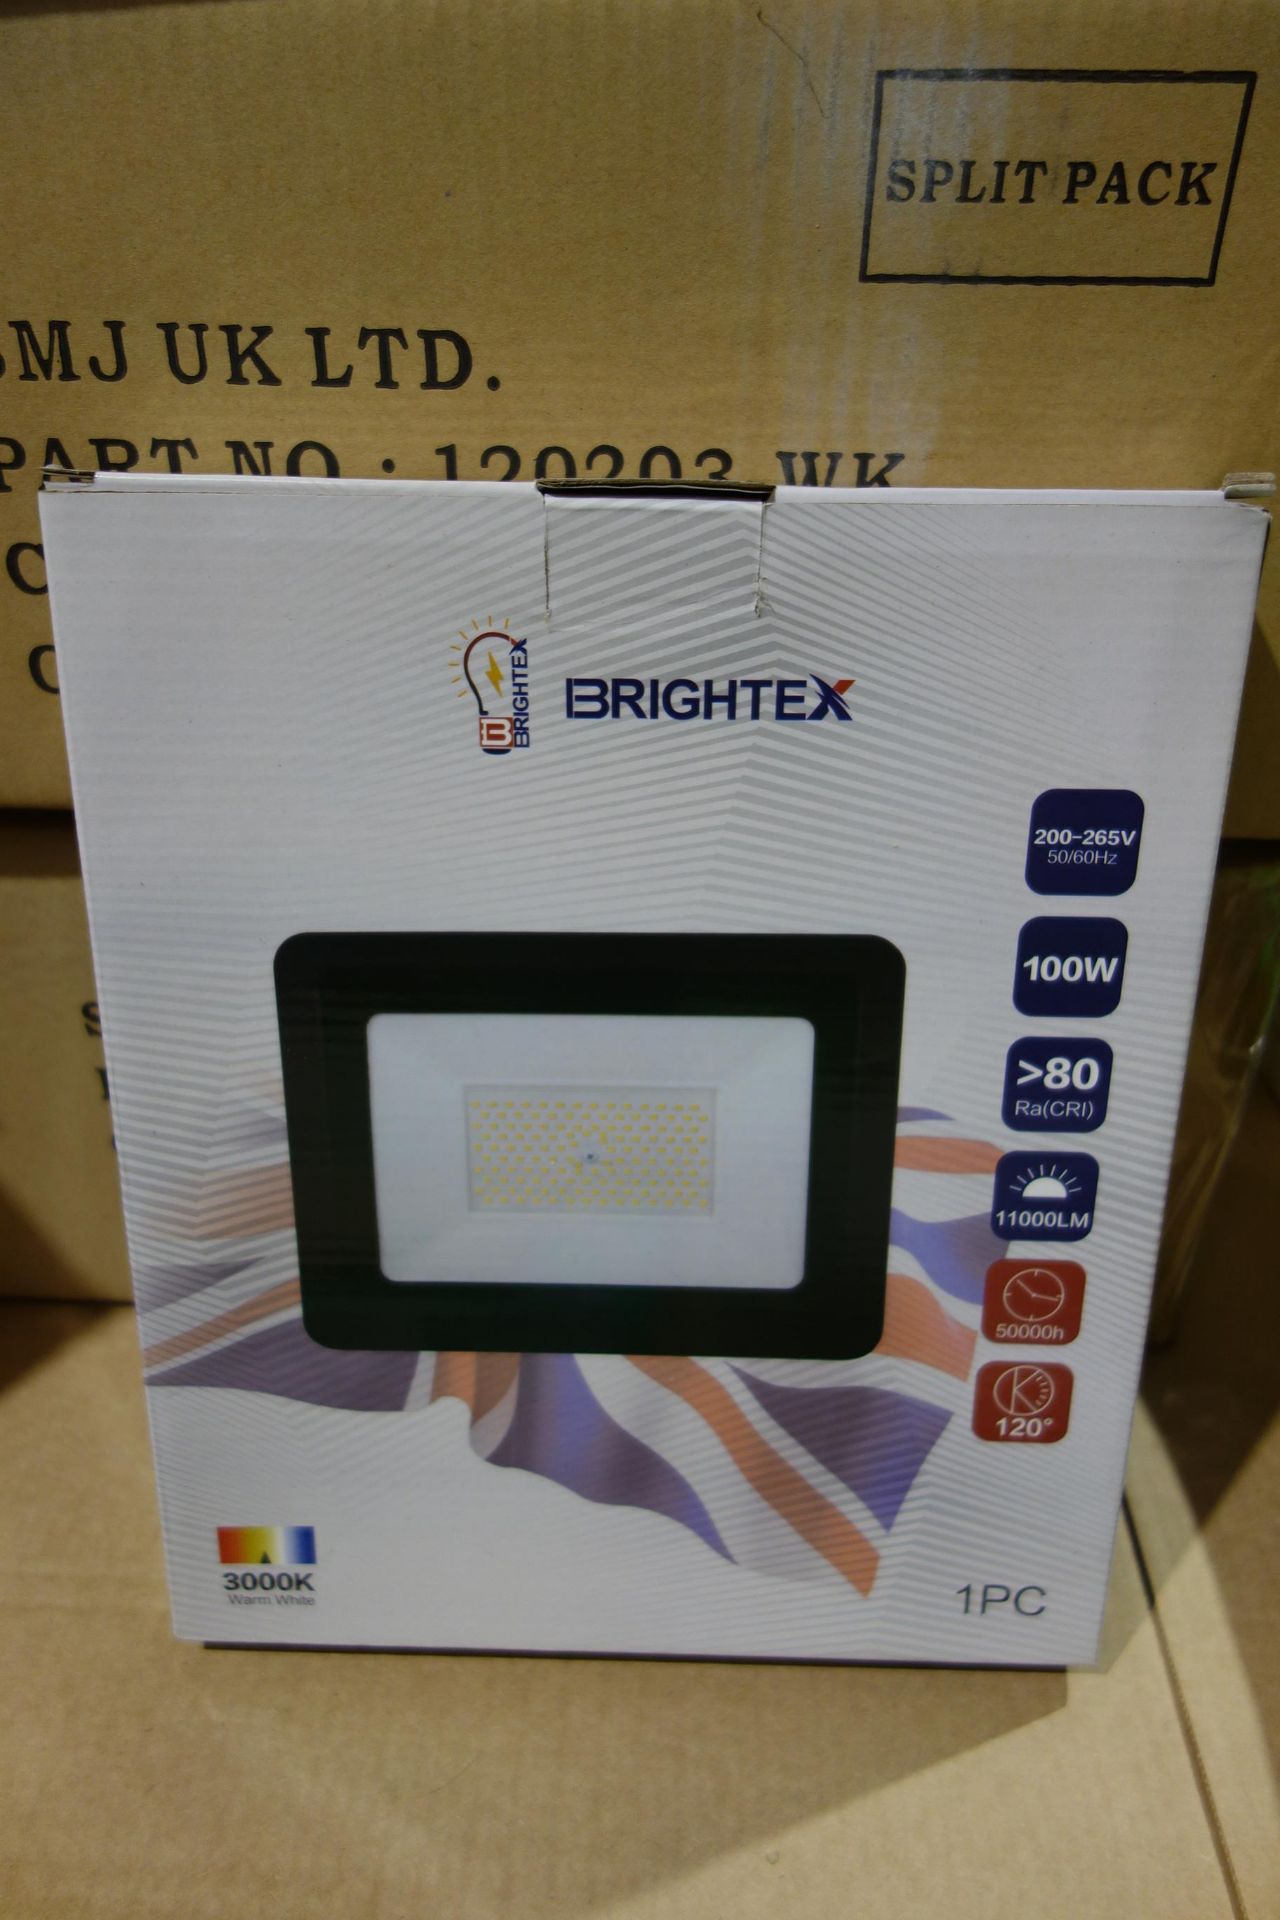 4x Brightex TDA-F-100-300 100W LED Flood Lights. 11000Lumens 3000K. Black Finish